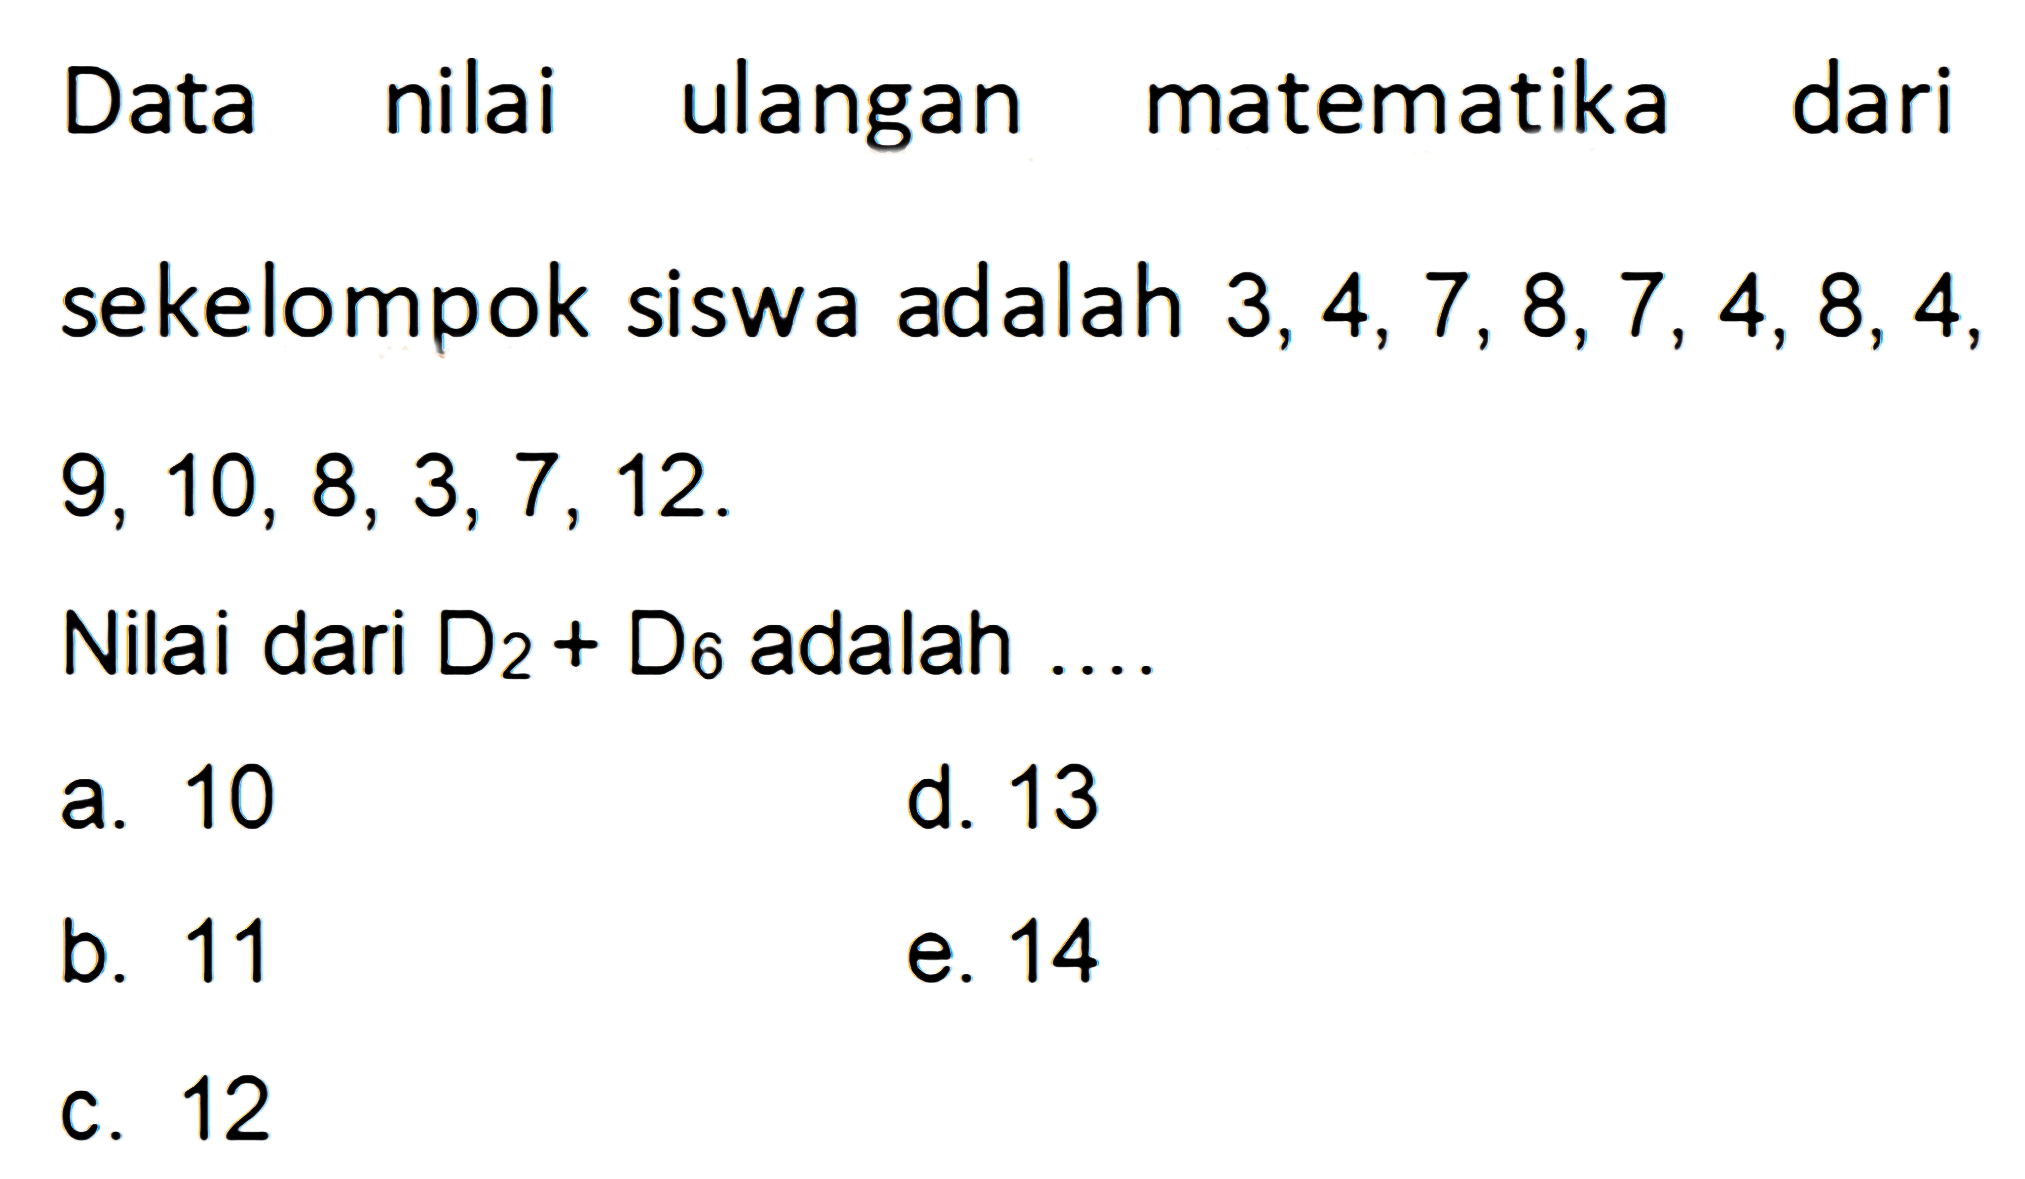 Data nilai ulangan matematika dari sekelompok siswa adalah 3,4, 7, 8,7, 4, 8,4, 9, 10, 8,3,7, 12. Nilai dari D2 + D6 adalah ..